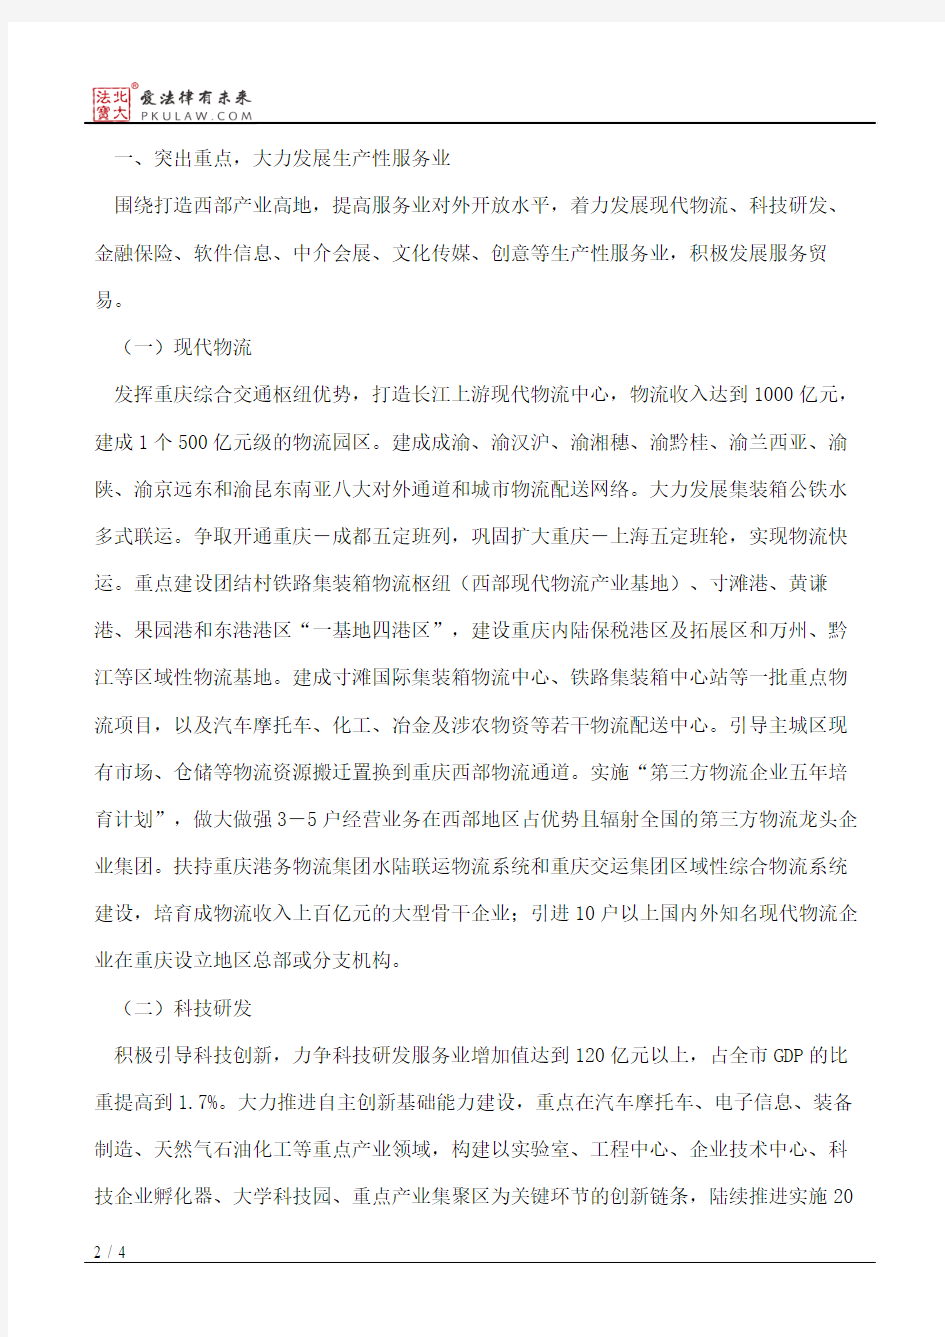 重庆市人民政府关于加快发展服务业的意见